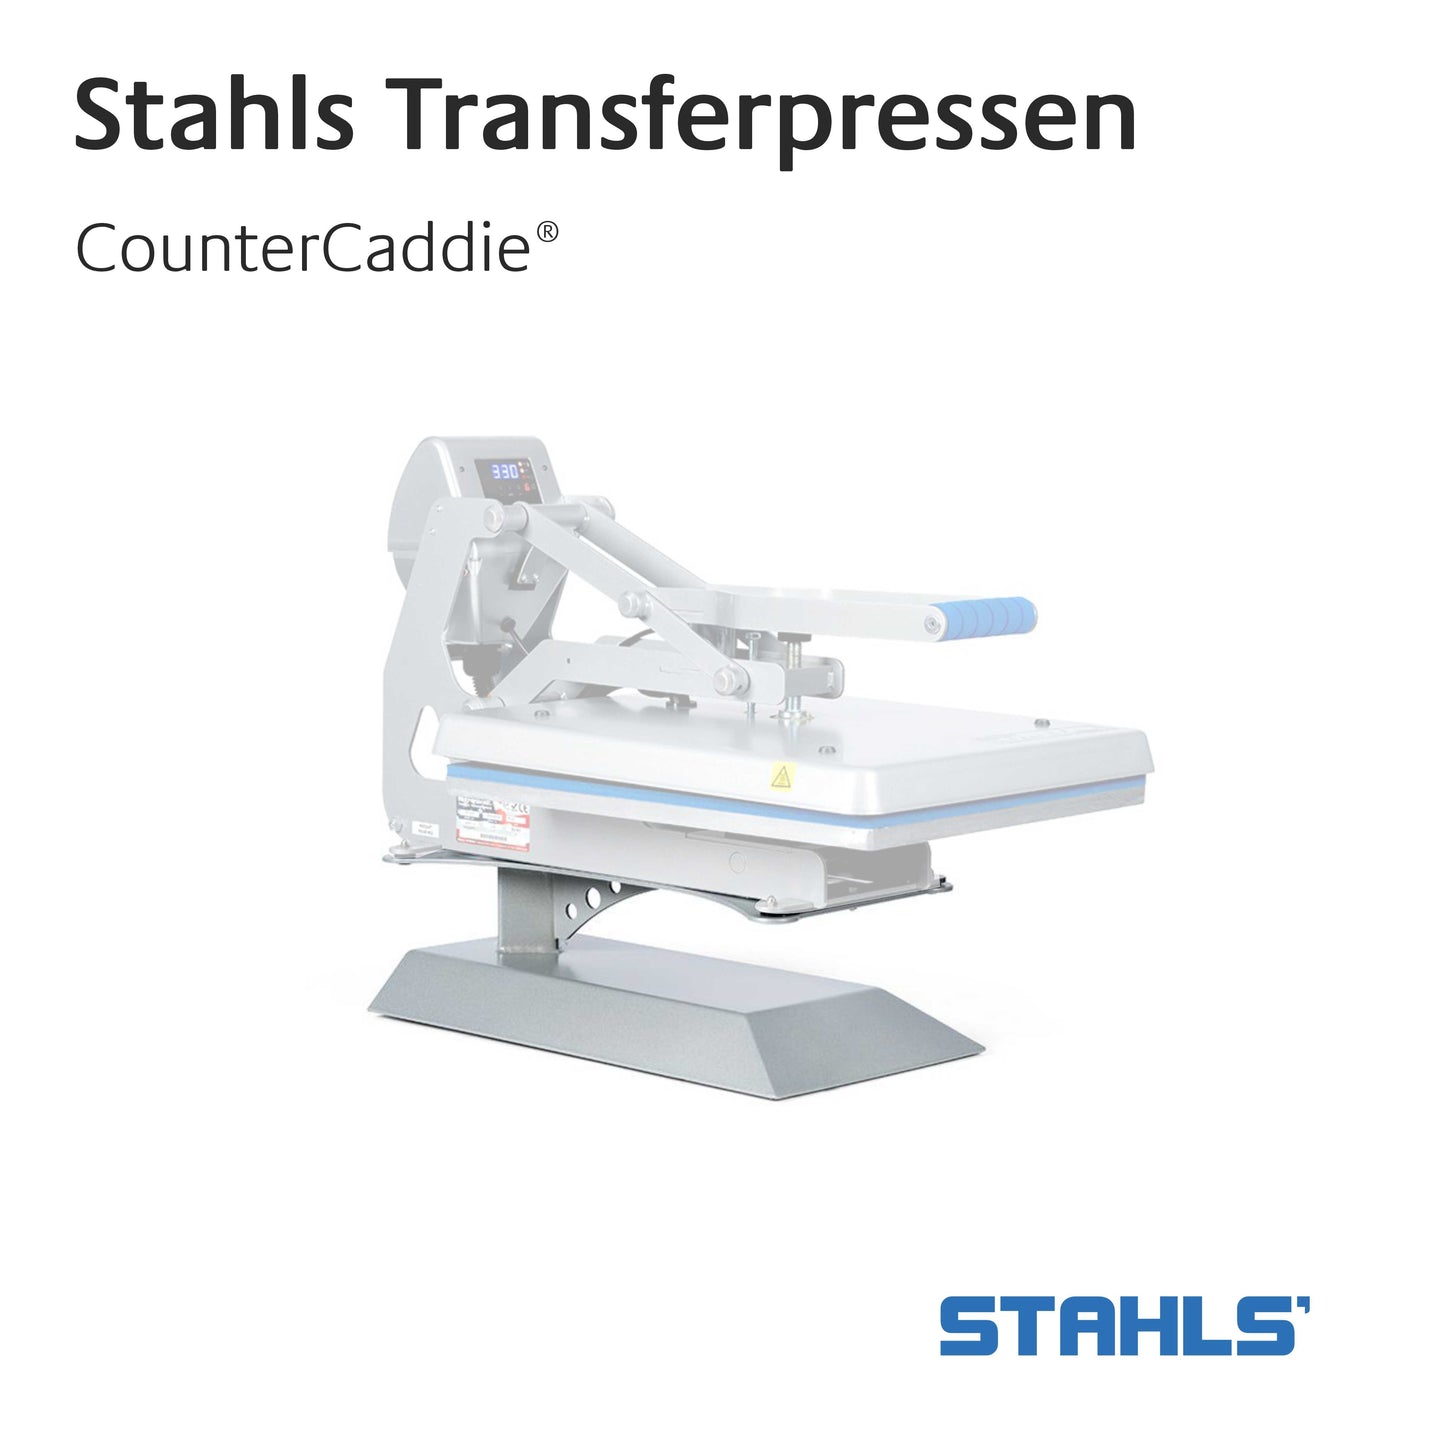 Stahls Transferpresse - CounterCaddie